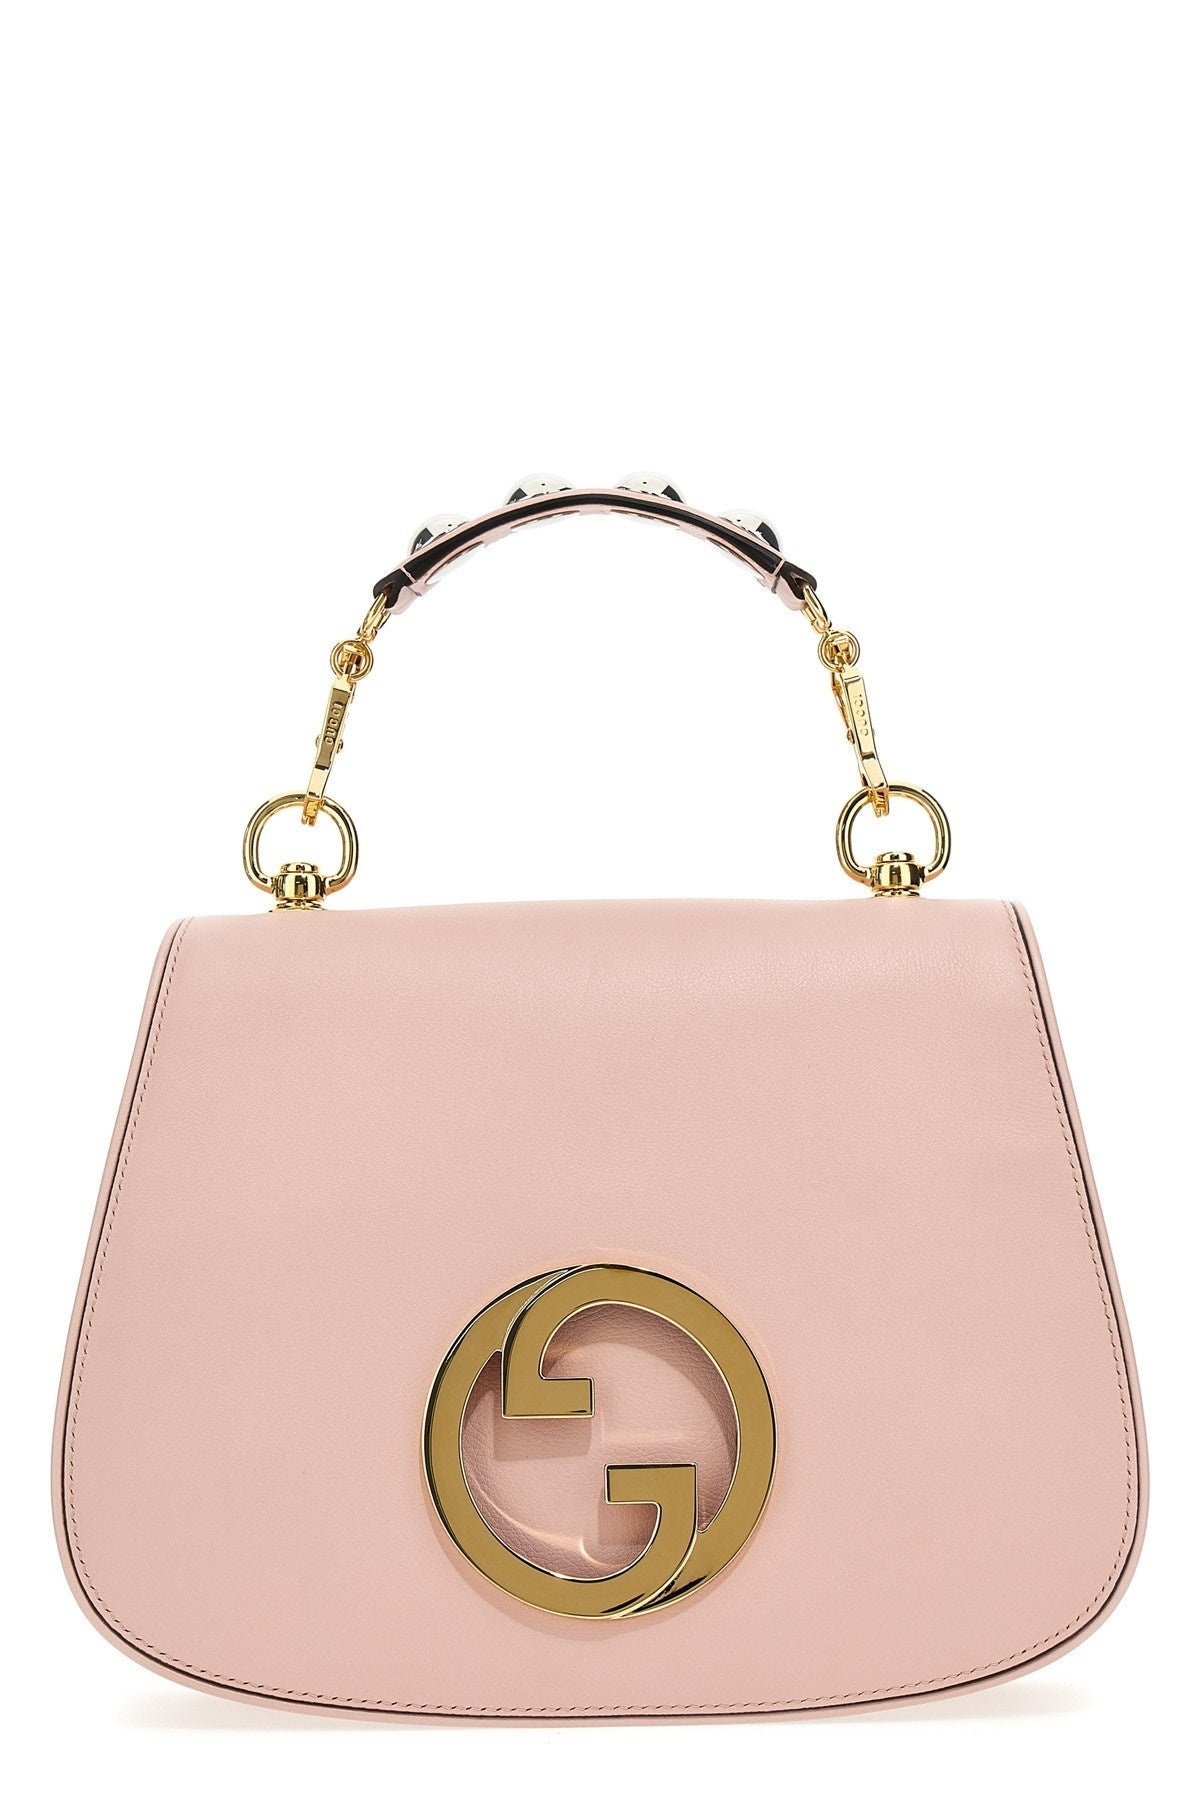 Gucci Women 'Gucci Bikini' Handbag - 1